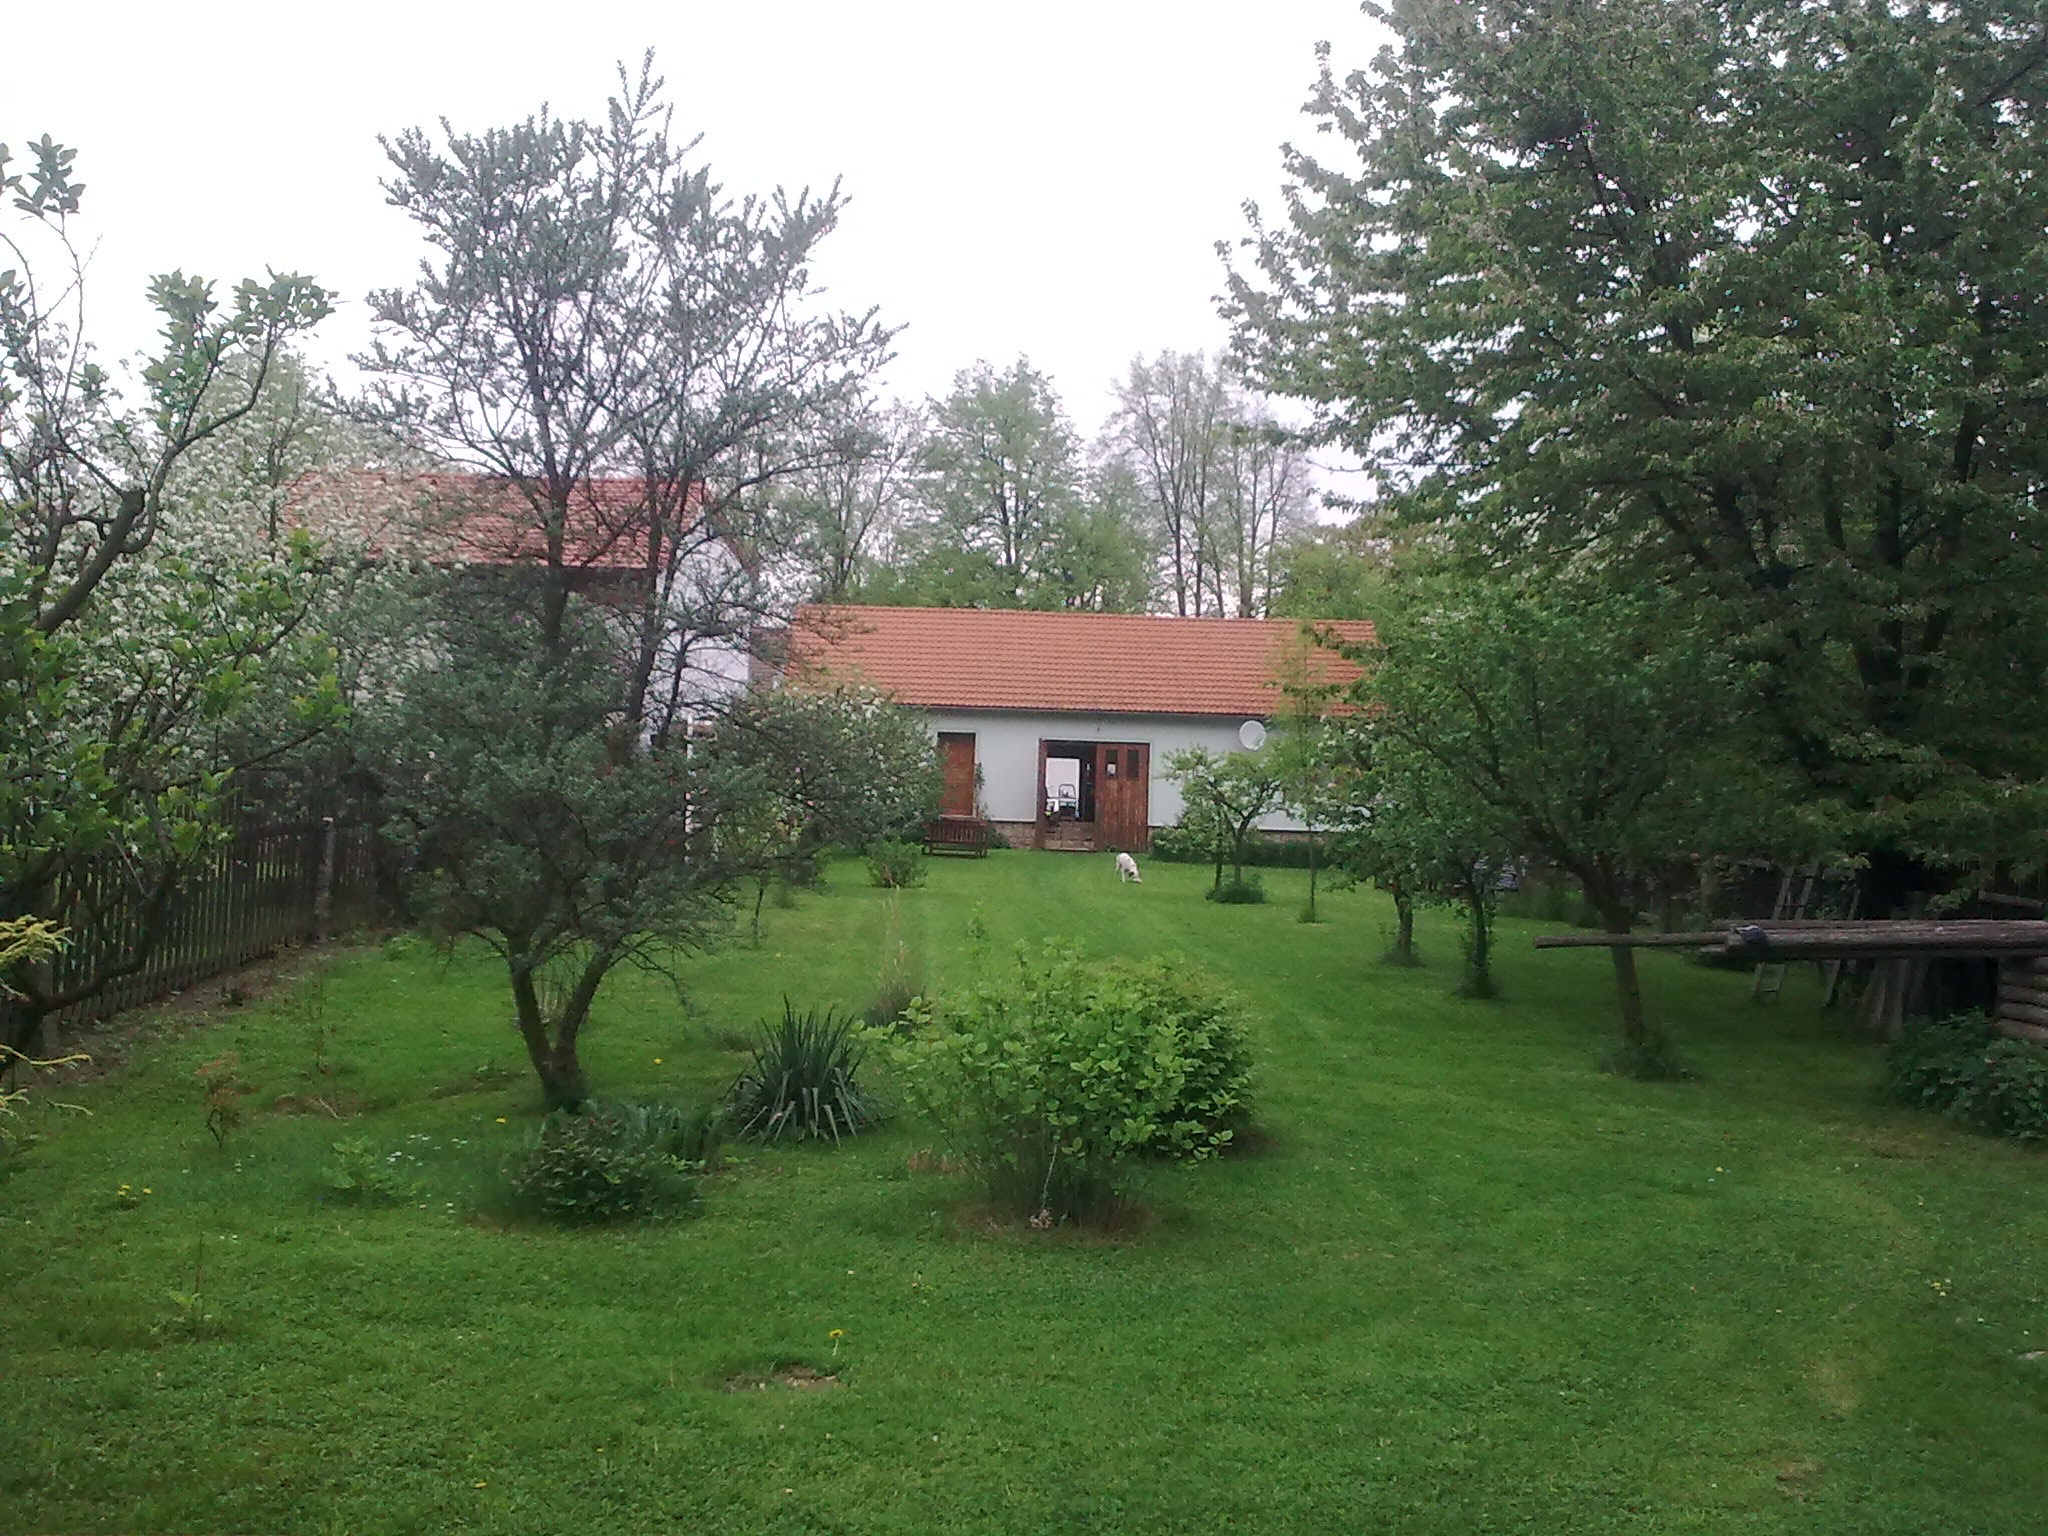 Pohled na zahradní domek s pokoji